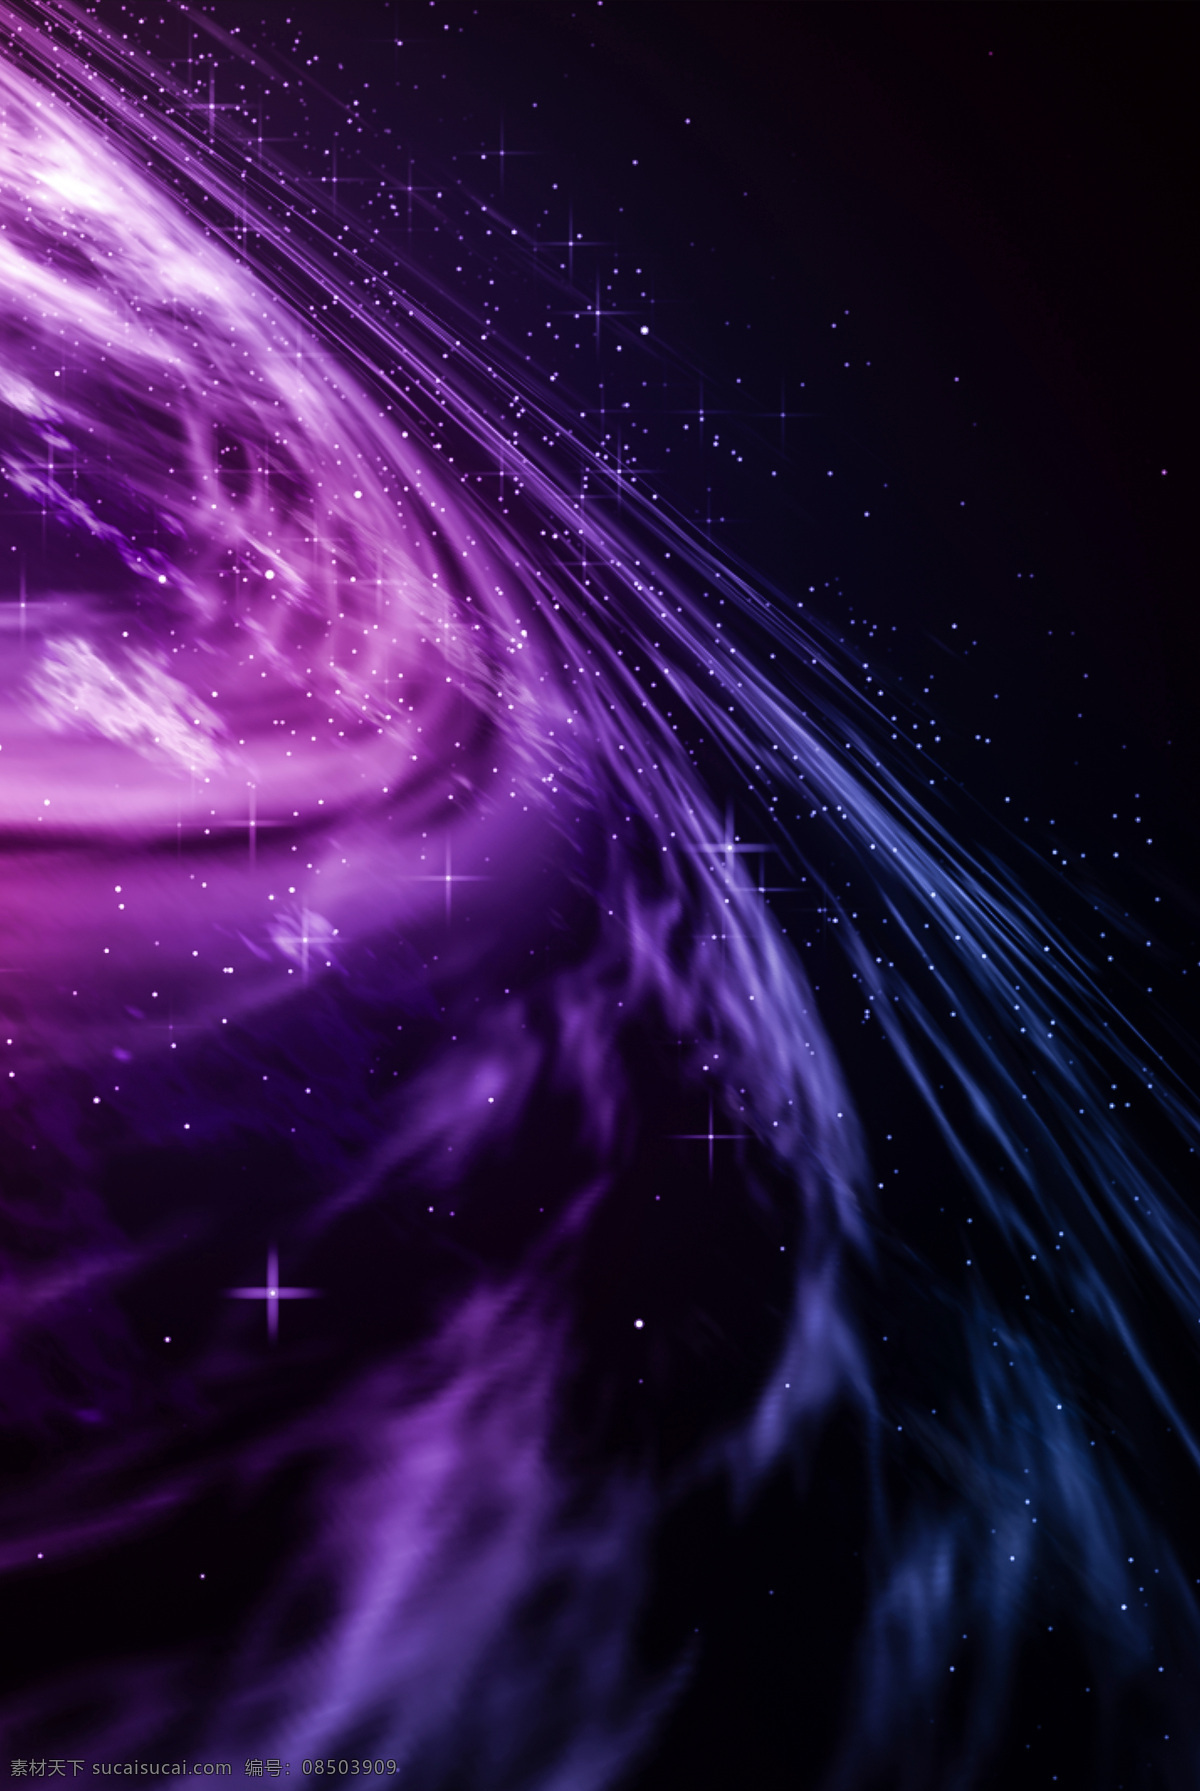 夜空 紫色星空 太空 夜景 冰冷星空 绚丽背景 1920 生活百科 电脑网络